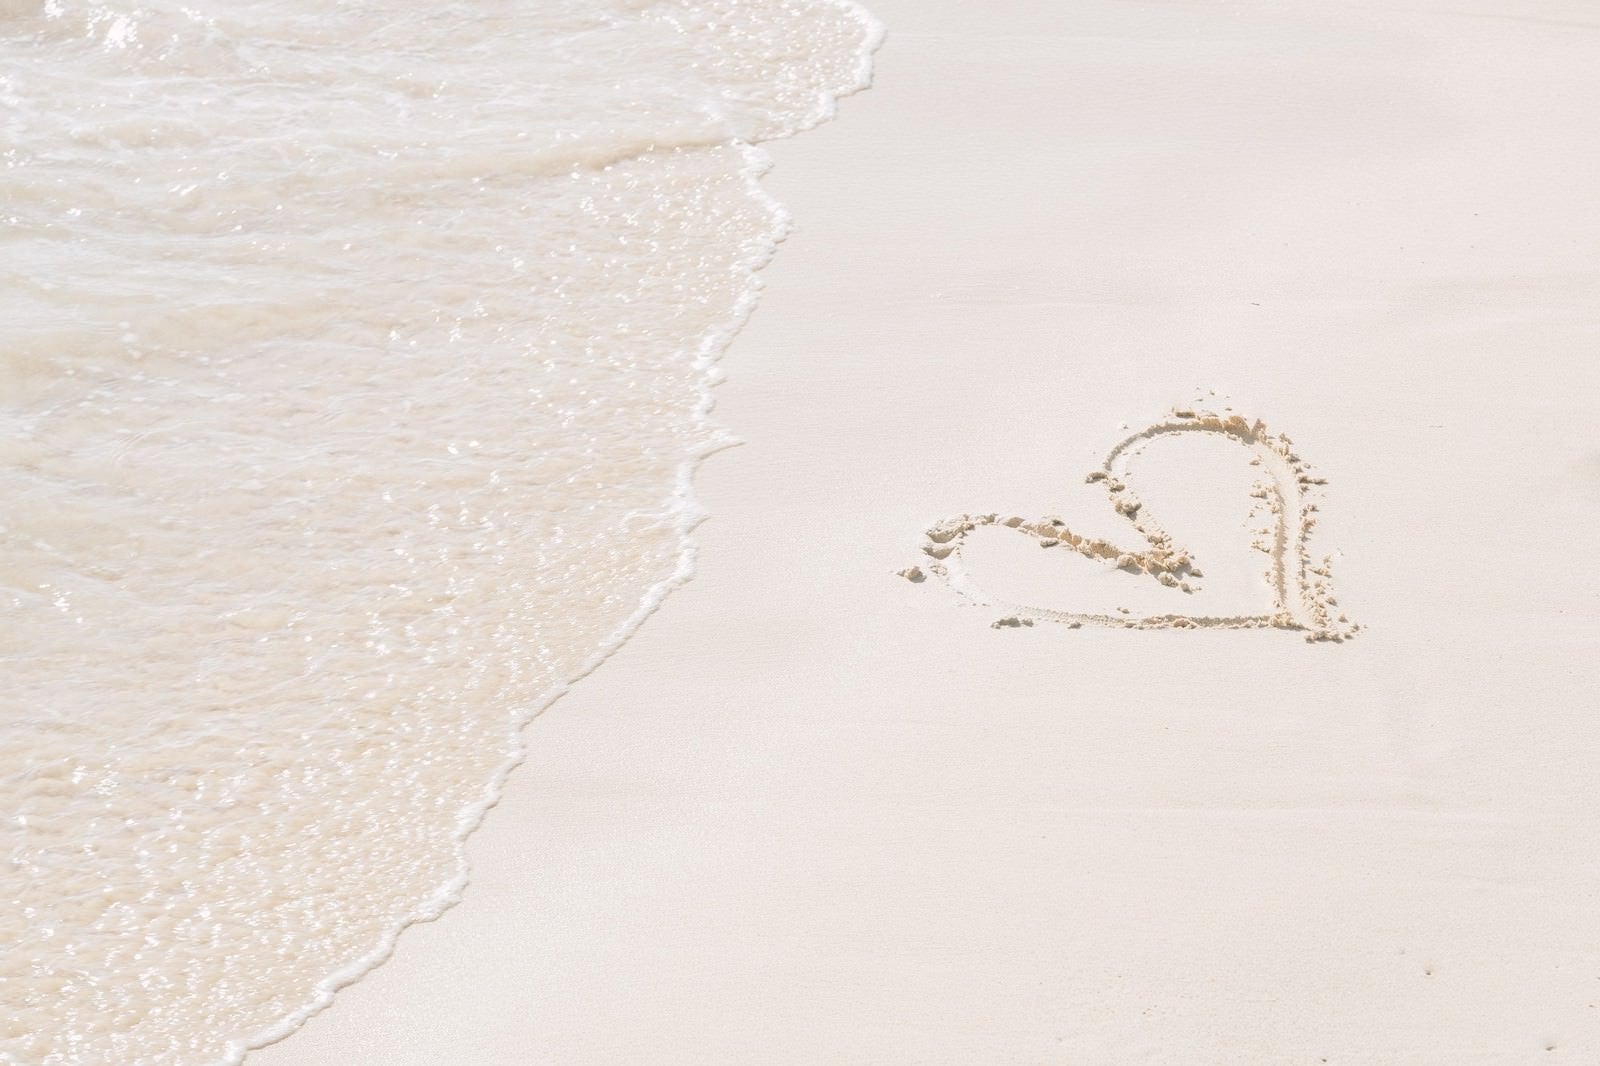 「ハートが描かれた砂浜と波」の写真